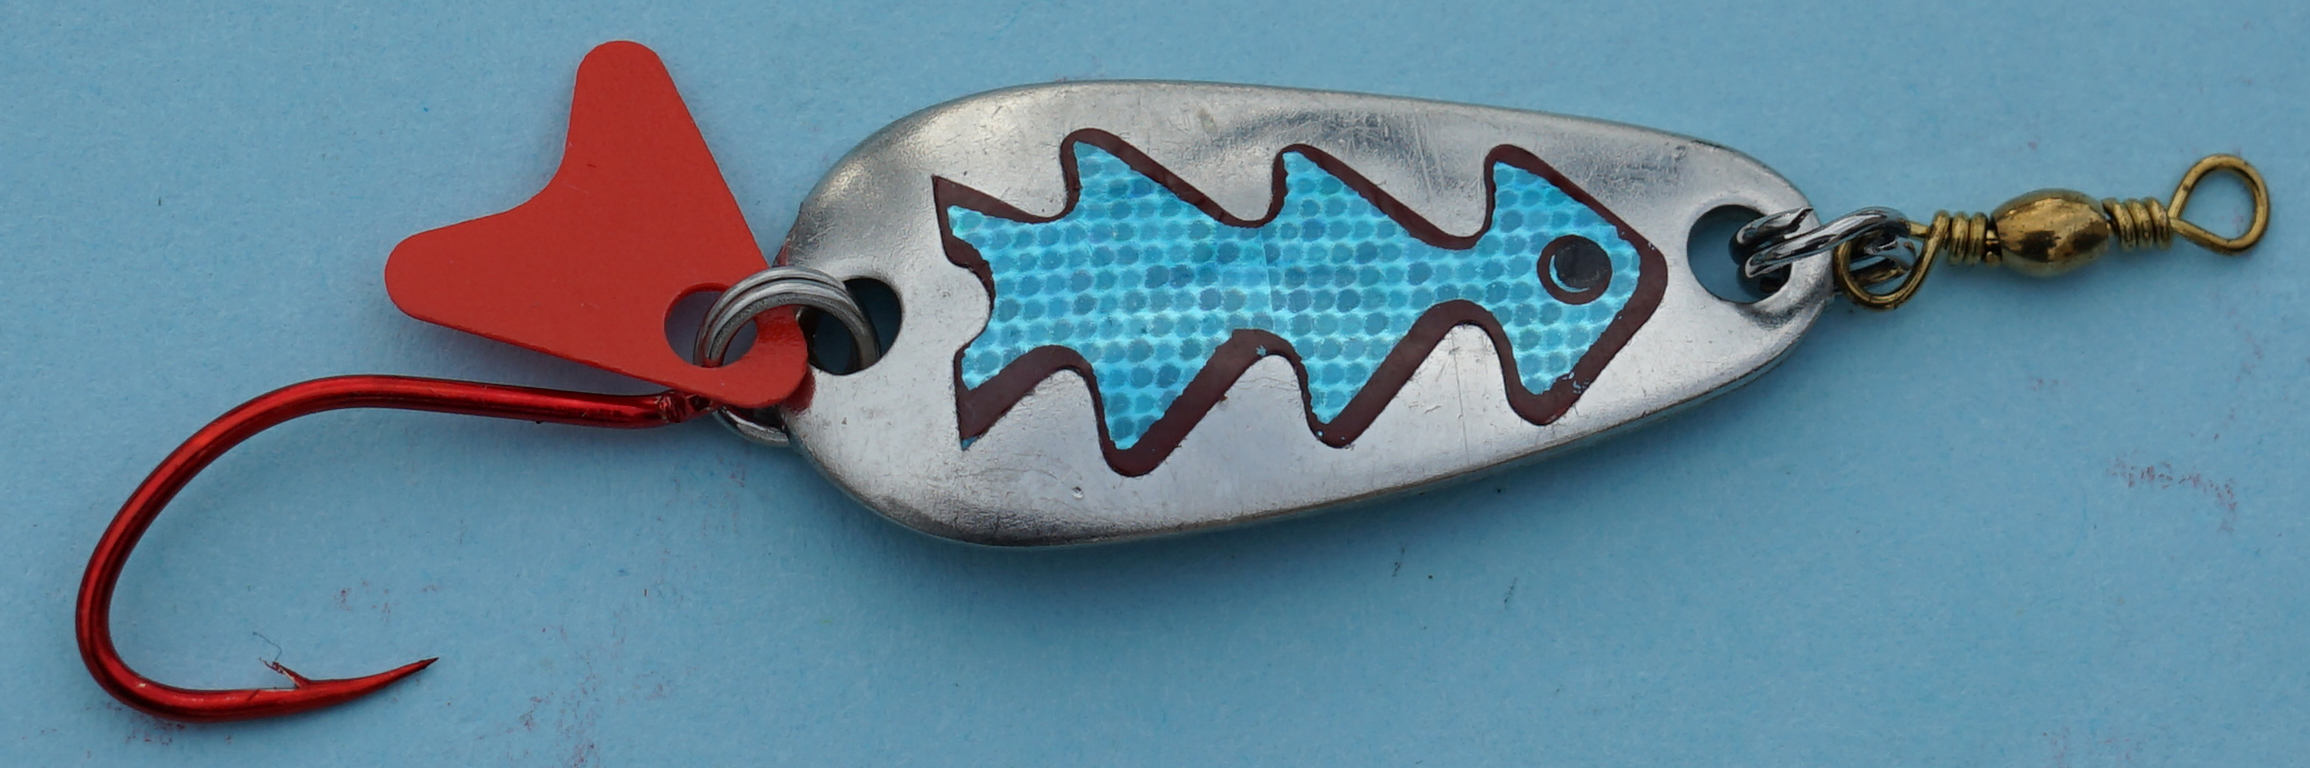 Profi-Spoon aus V2A-Edelstahl mit roten Einzelhaken / Silber mit Reflex-Folie / Blau-Metallic-Dekor / Größe A / 5g / 35mm